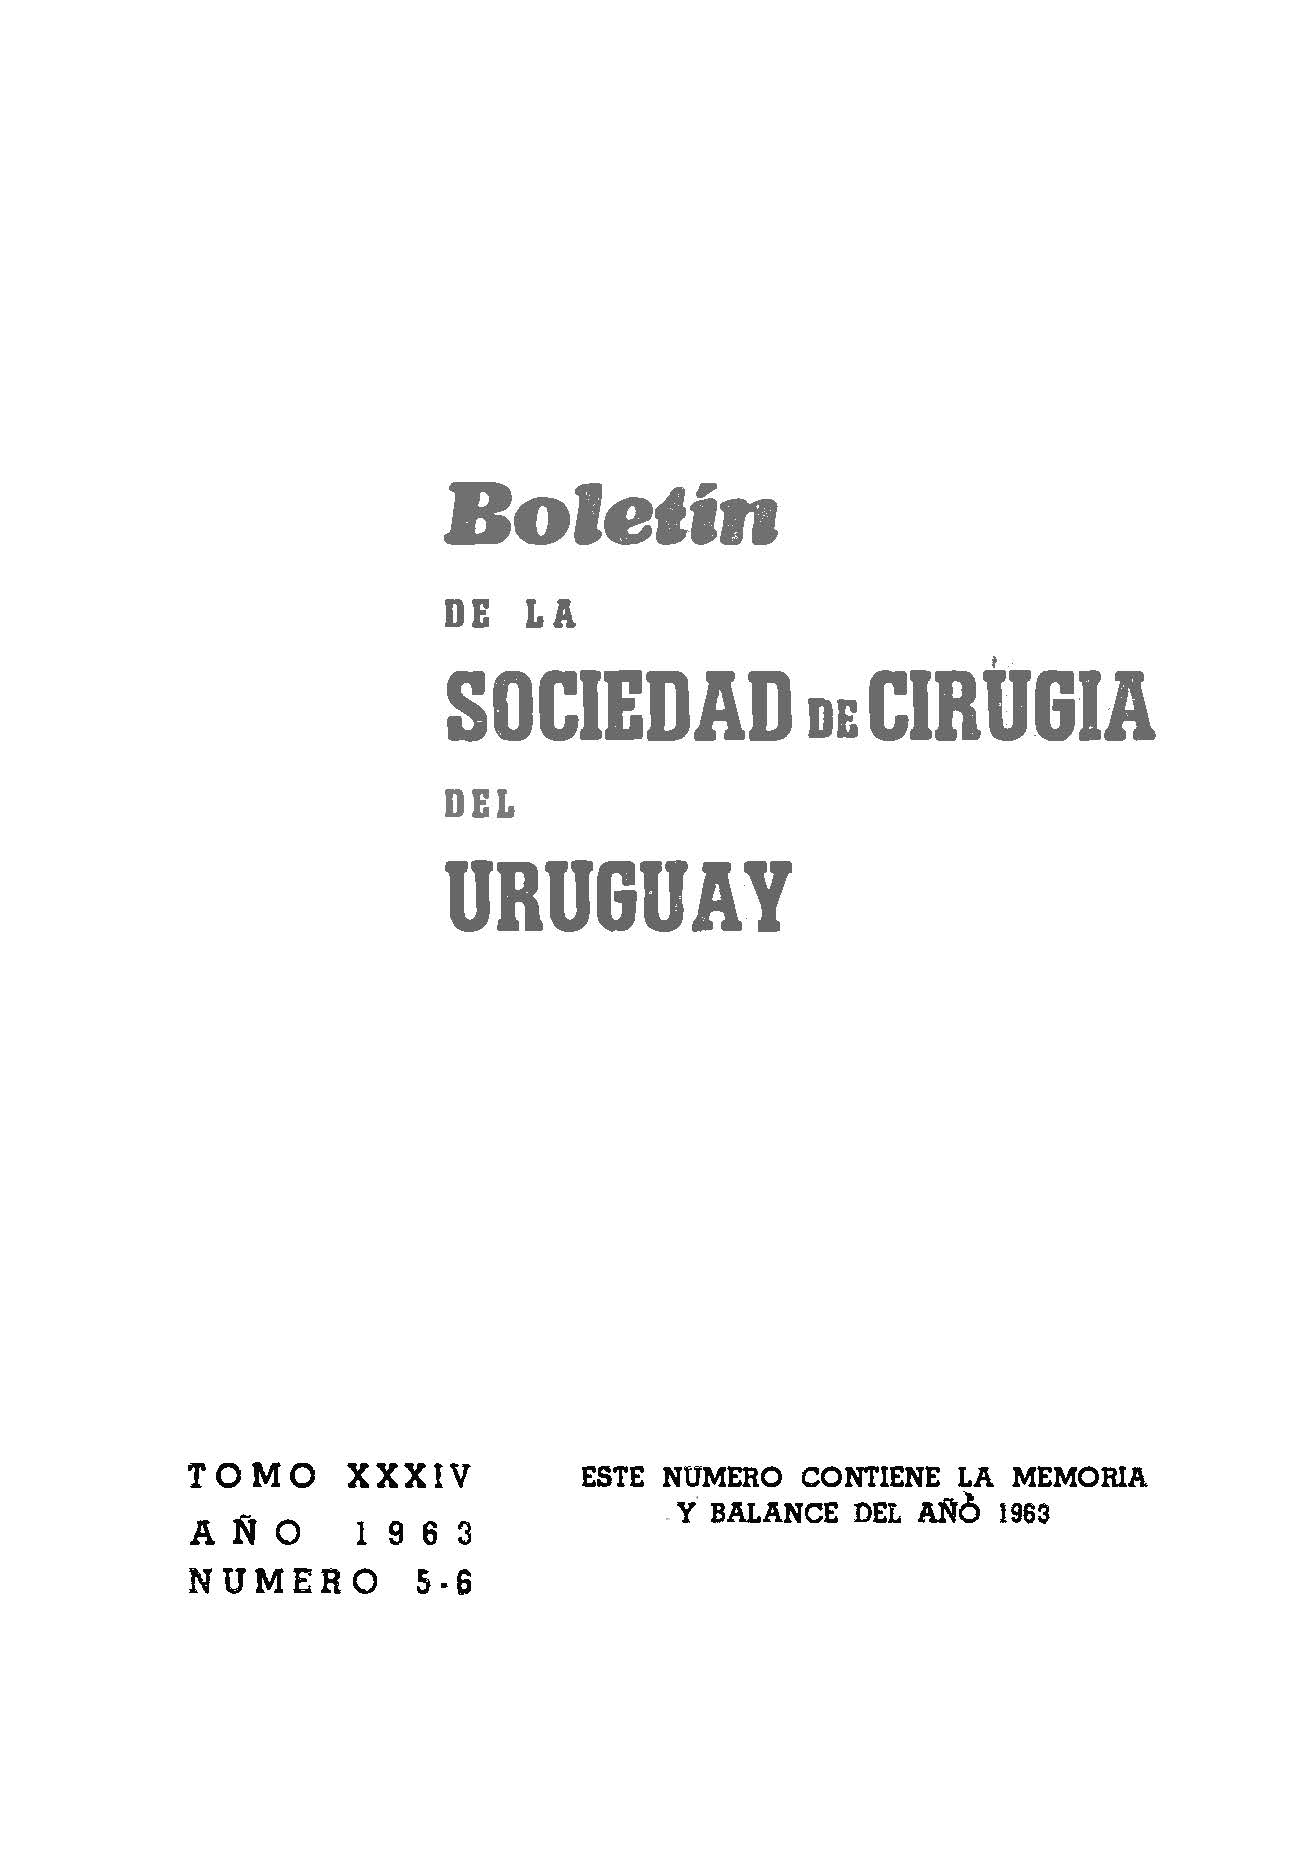 					Ver Vol. 34 Núm. 5-6 (1963): Boletín de la Sociedad de Cirugía del Uruguay
				